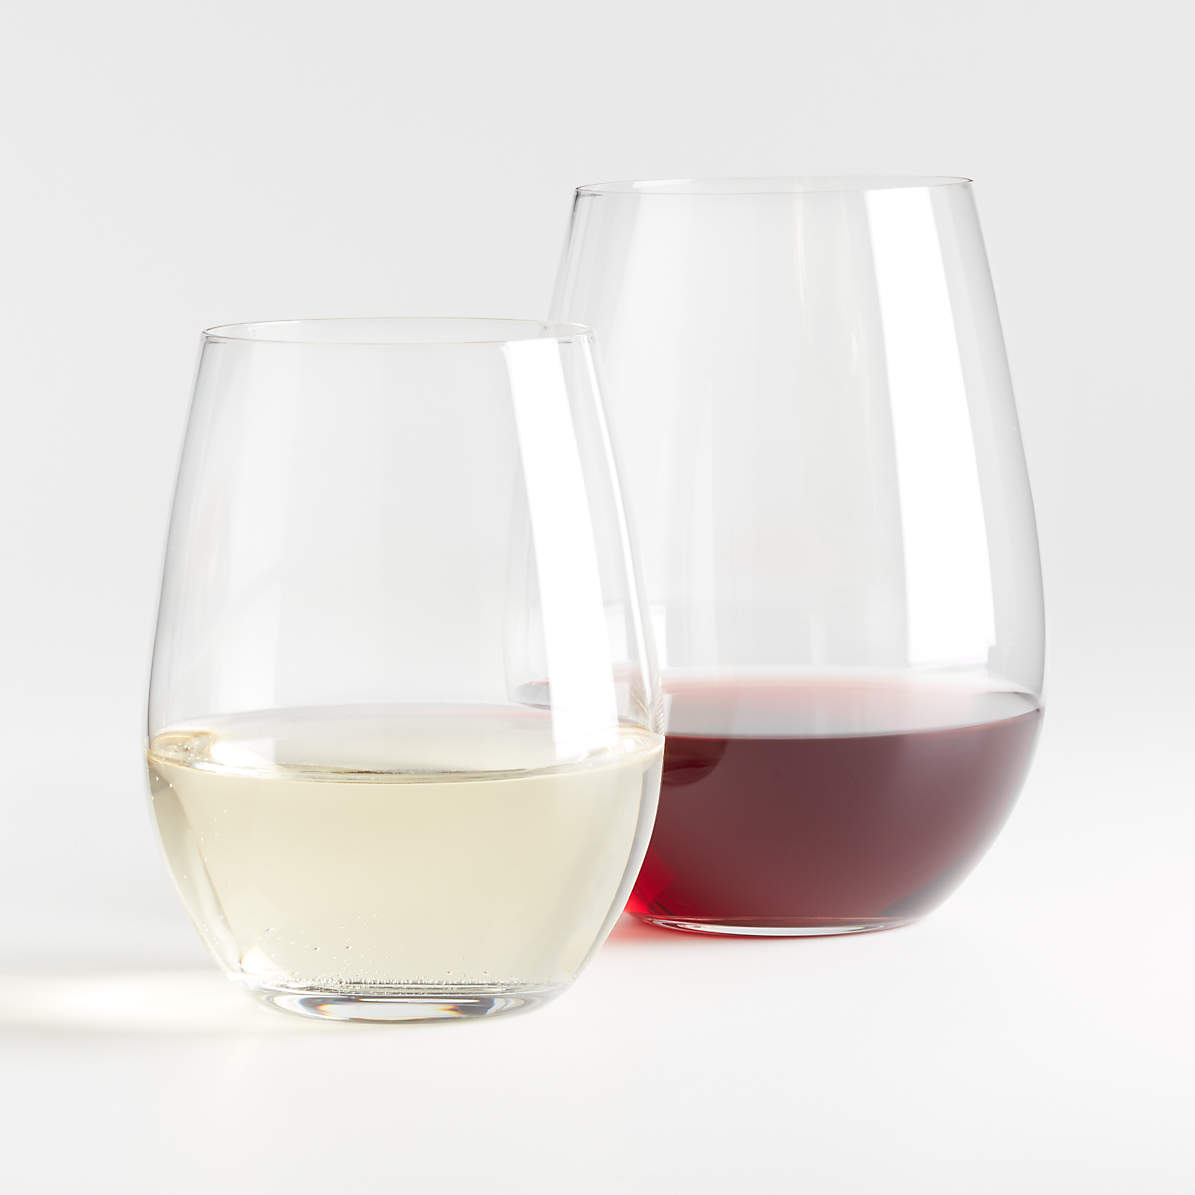 https://cb.scene7.com/is/image/Crate/VineyardStemlessWineFSSS21/$web_pdp_main_carousel_zoom_med$/201119163424/vineyard-wine-stemless-glasses.jpg